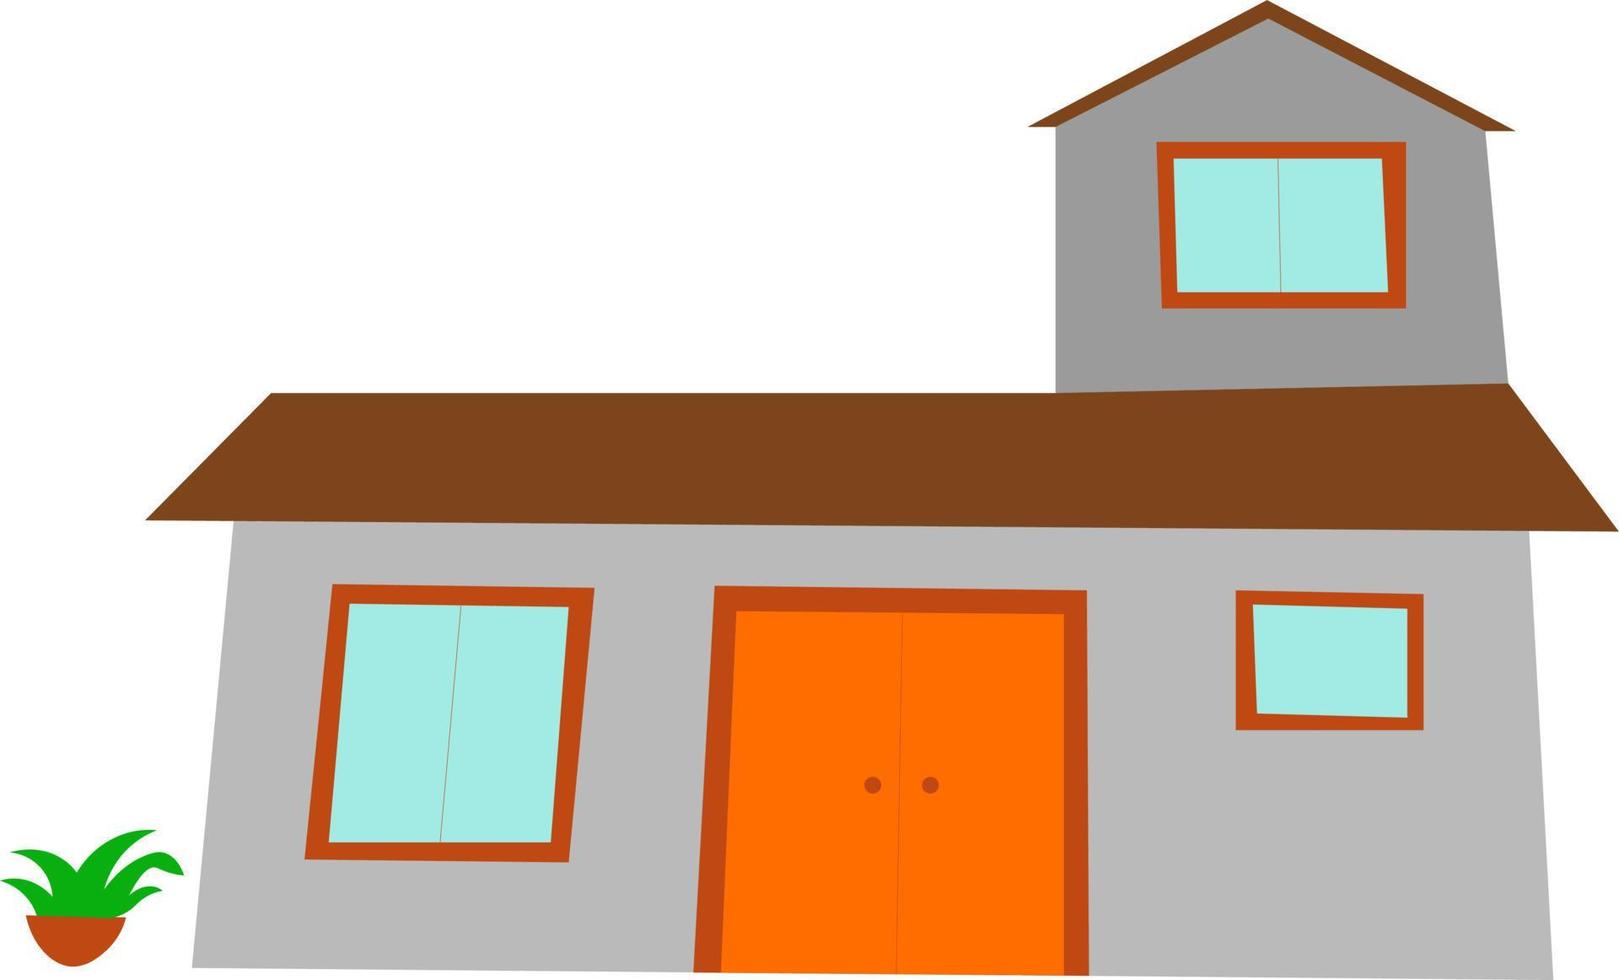 minimalistic house illustration isolated on white background vector